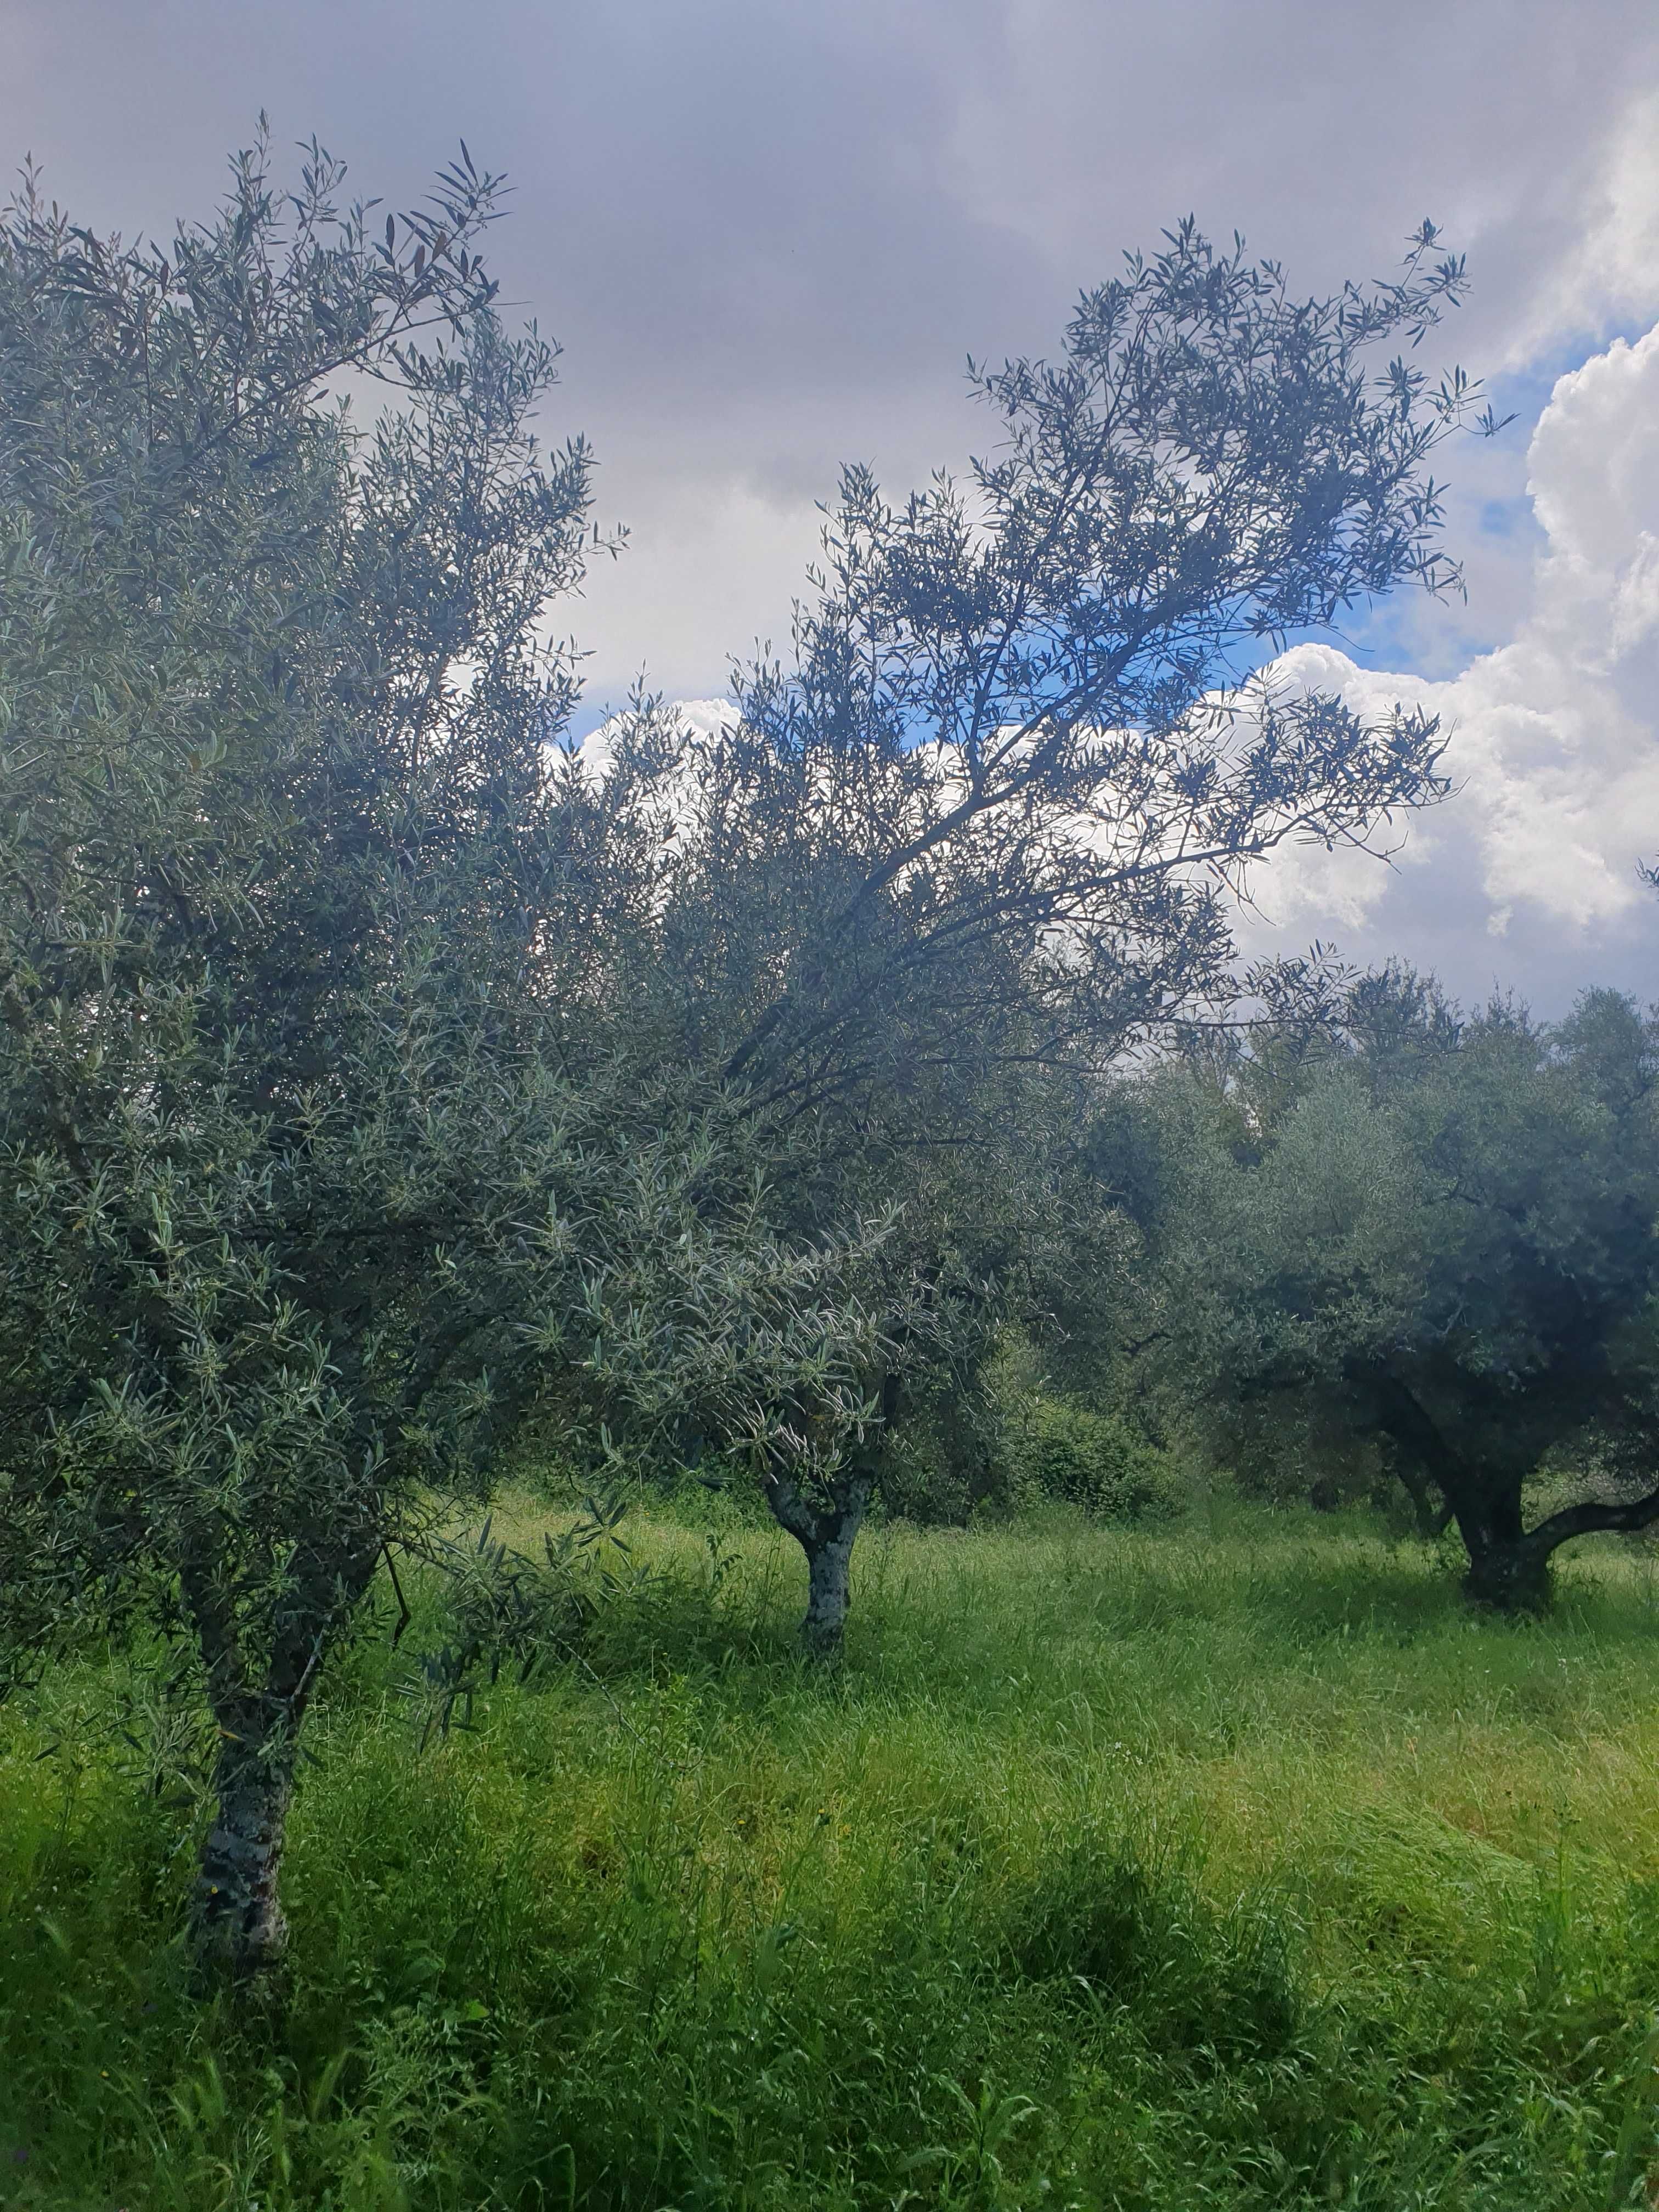 Vende se Terreno Rustico com oliveiras na aldeia de Roios, Vila Flor